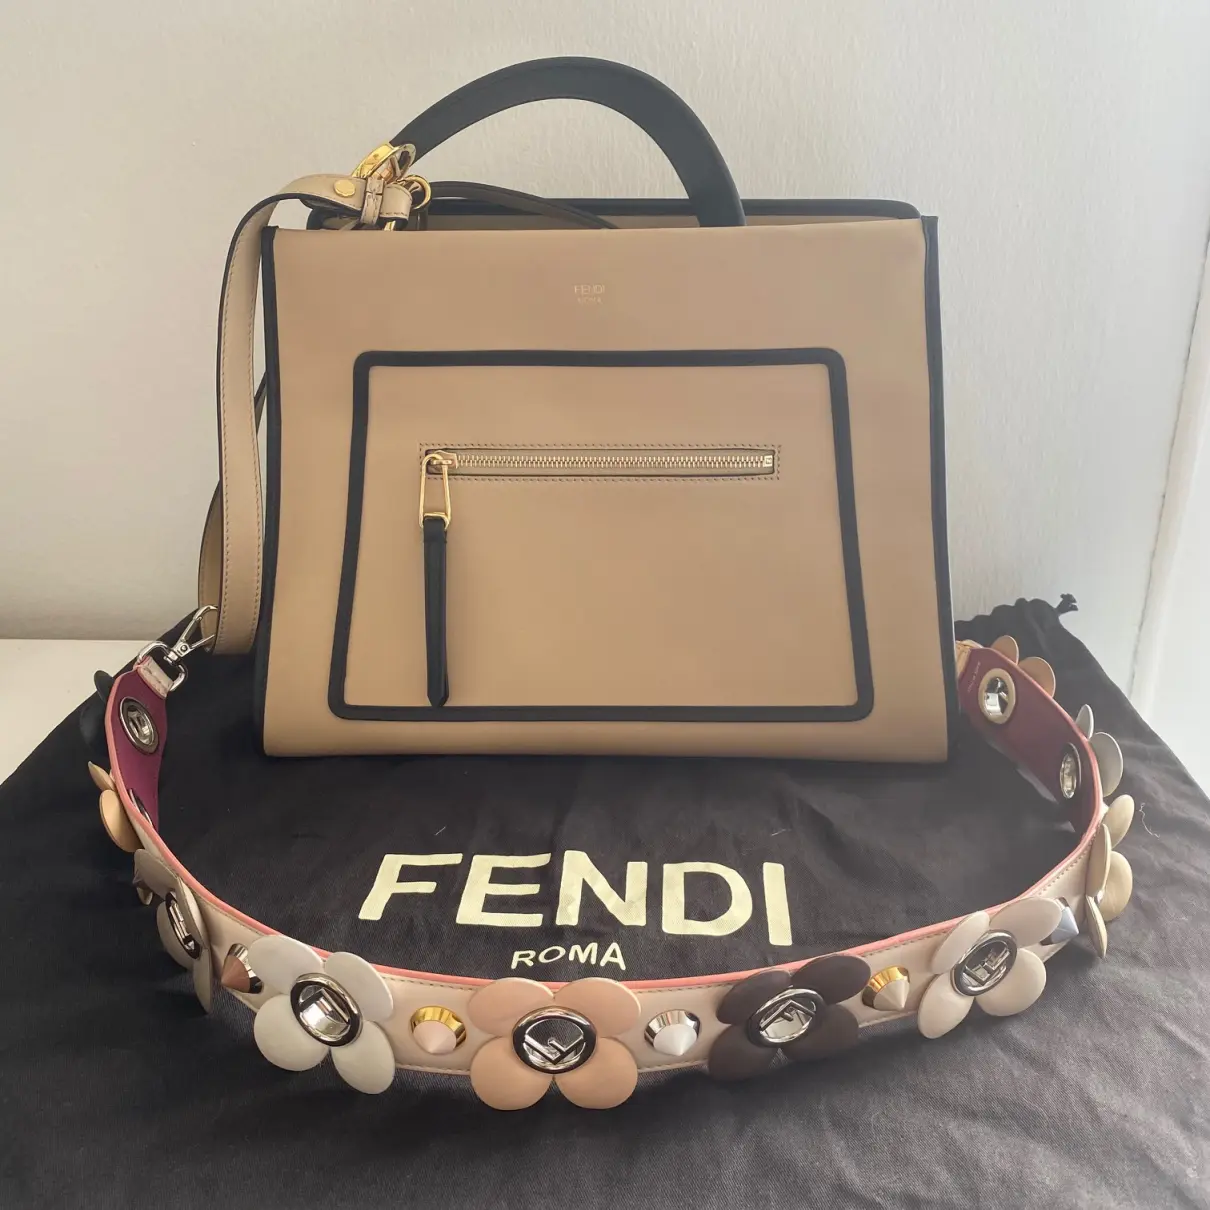 Buy Fendi Runaway leather tote online